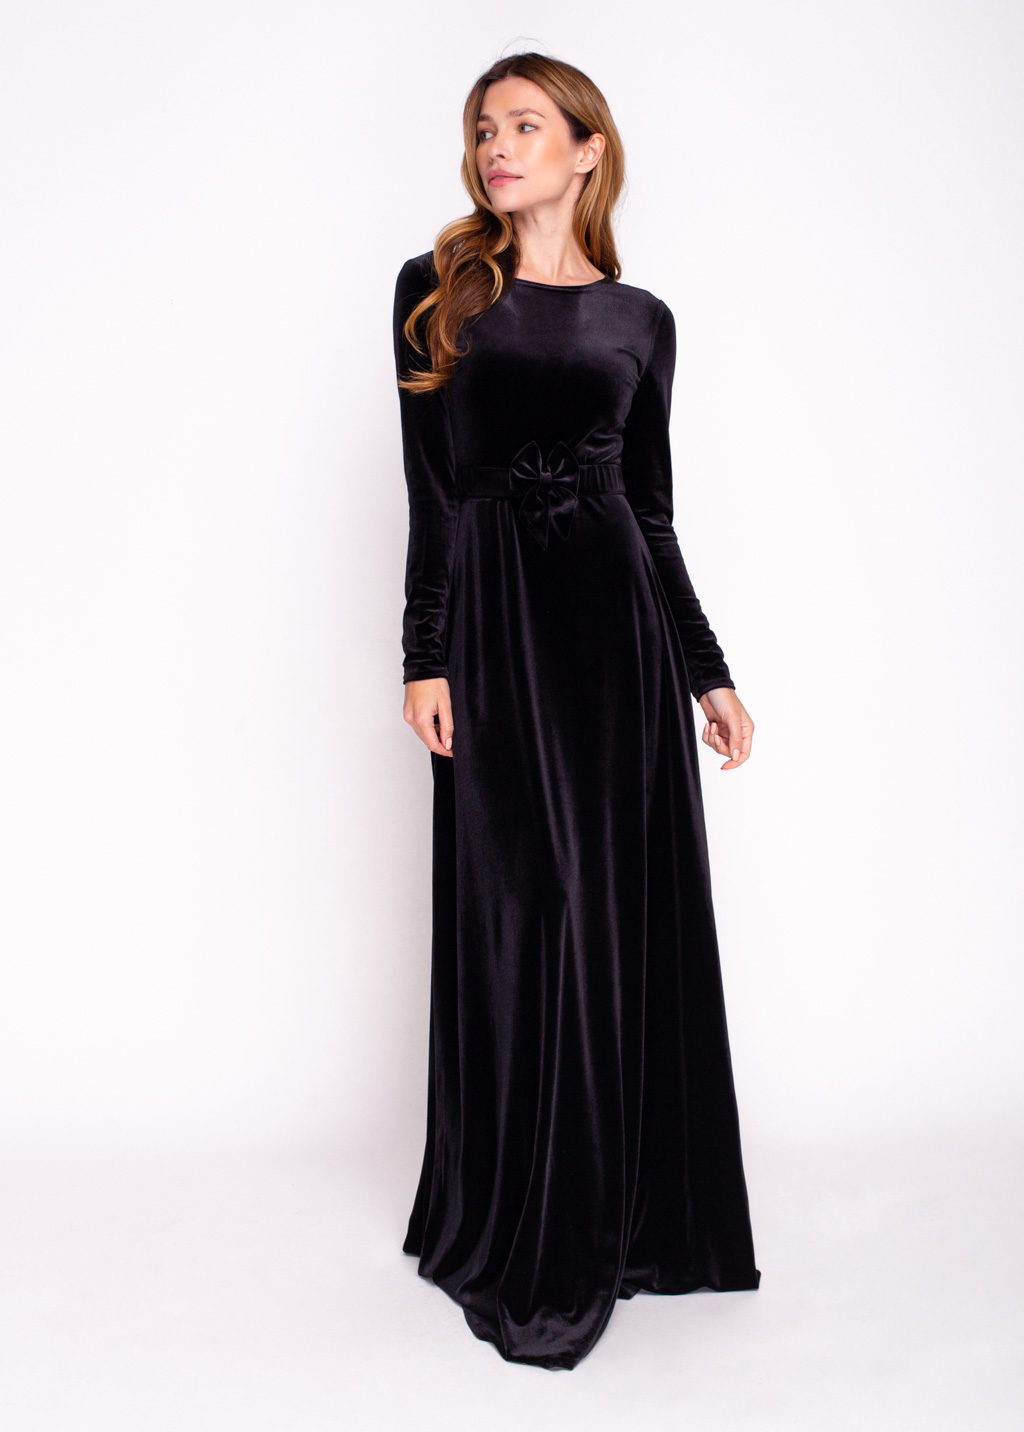 Black velvet long dress with belt